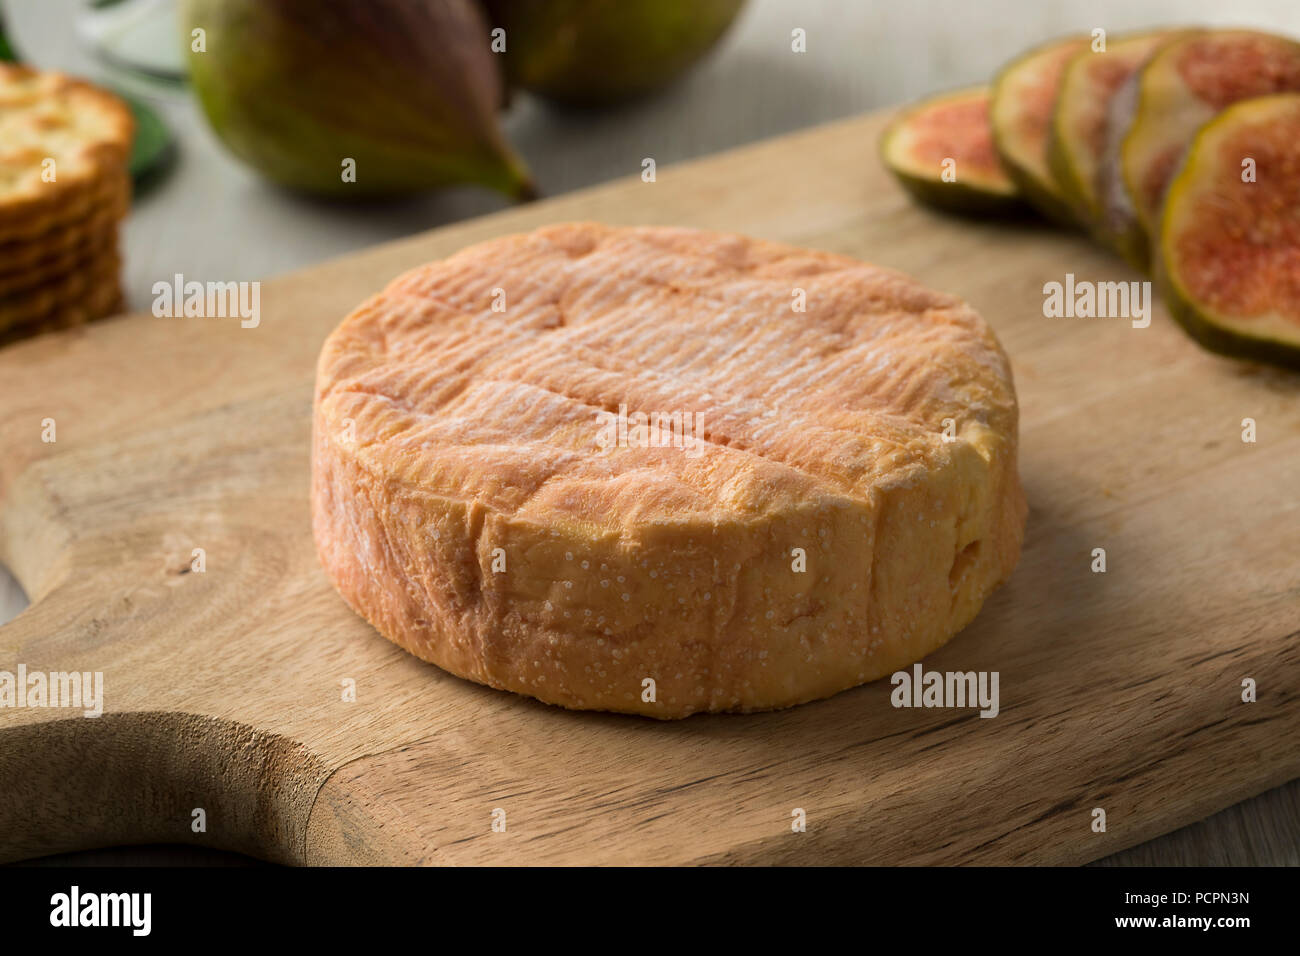 Todo petit Munster quesos maduros de cerca e higos frescos en el fondo para el postre Foto de stock